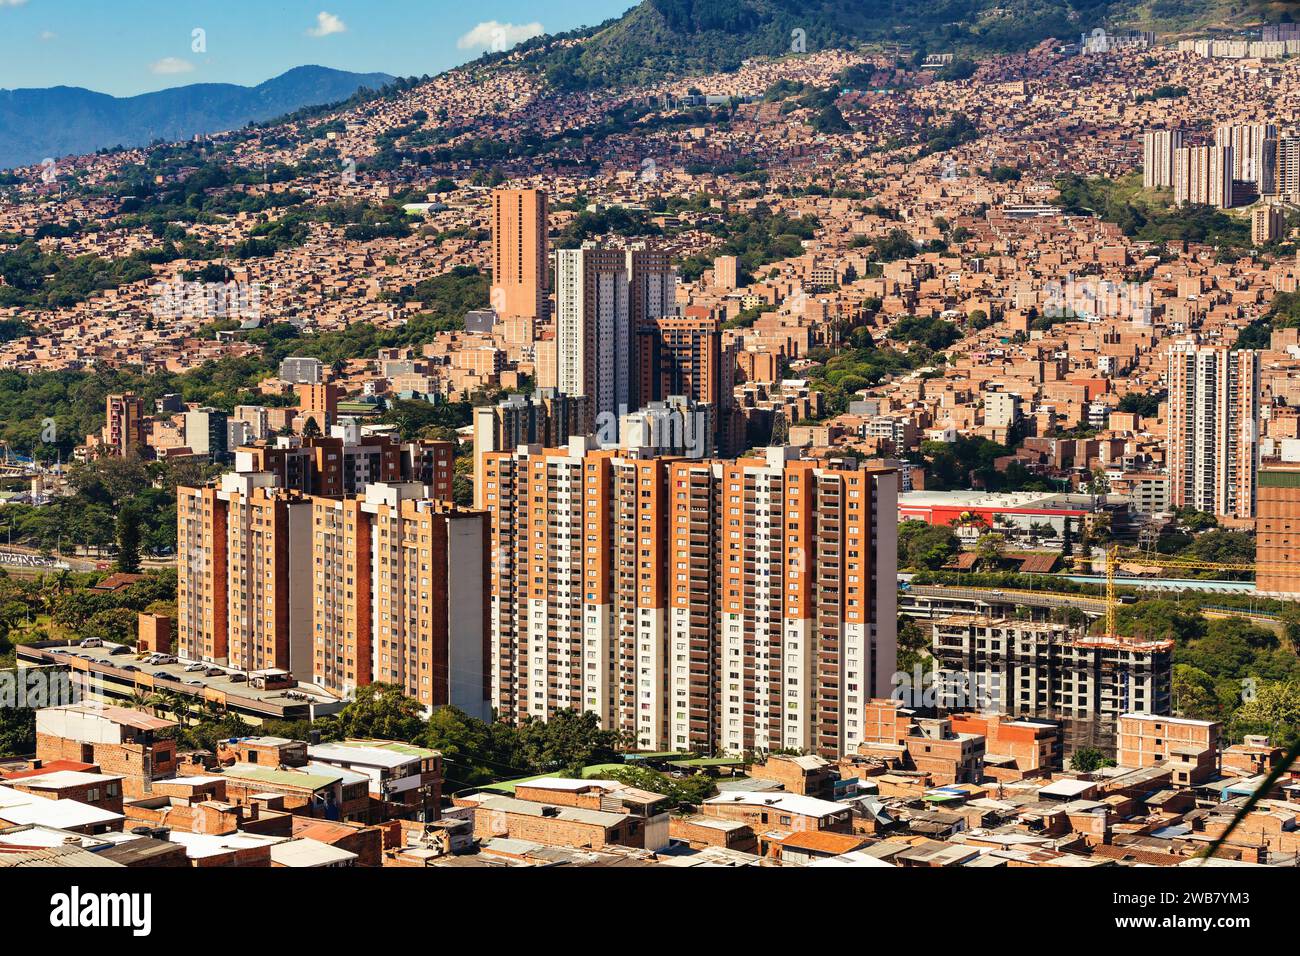 Vue sur le paysage urbain de Copacabana, banlieue de Medellin. Ville et municipalité dans le département colombien d'Antioquia. Colombie Banque D'Images